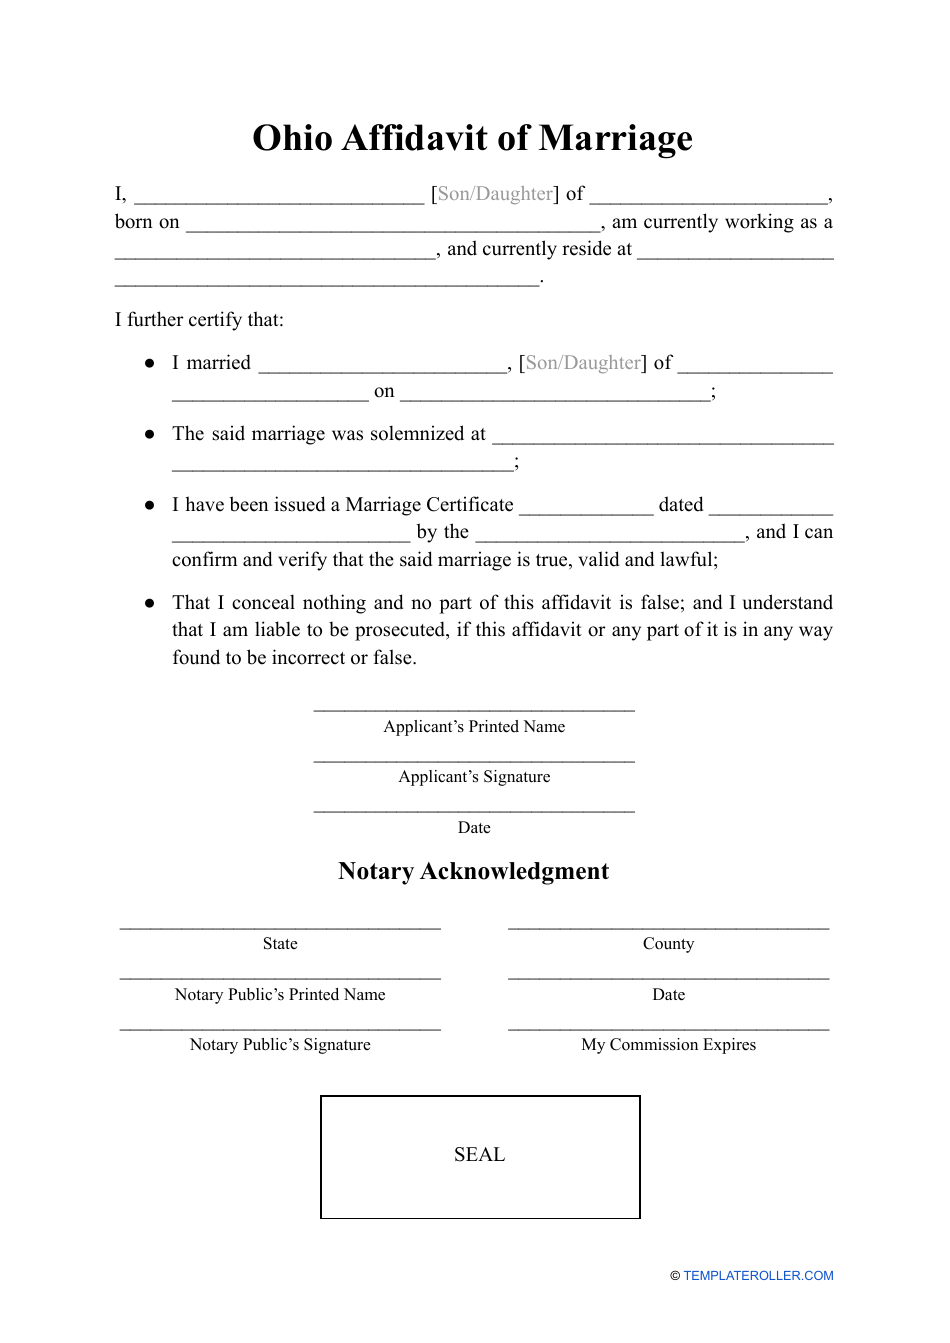 Affidavit of Marriage - Ohio, Page 1